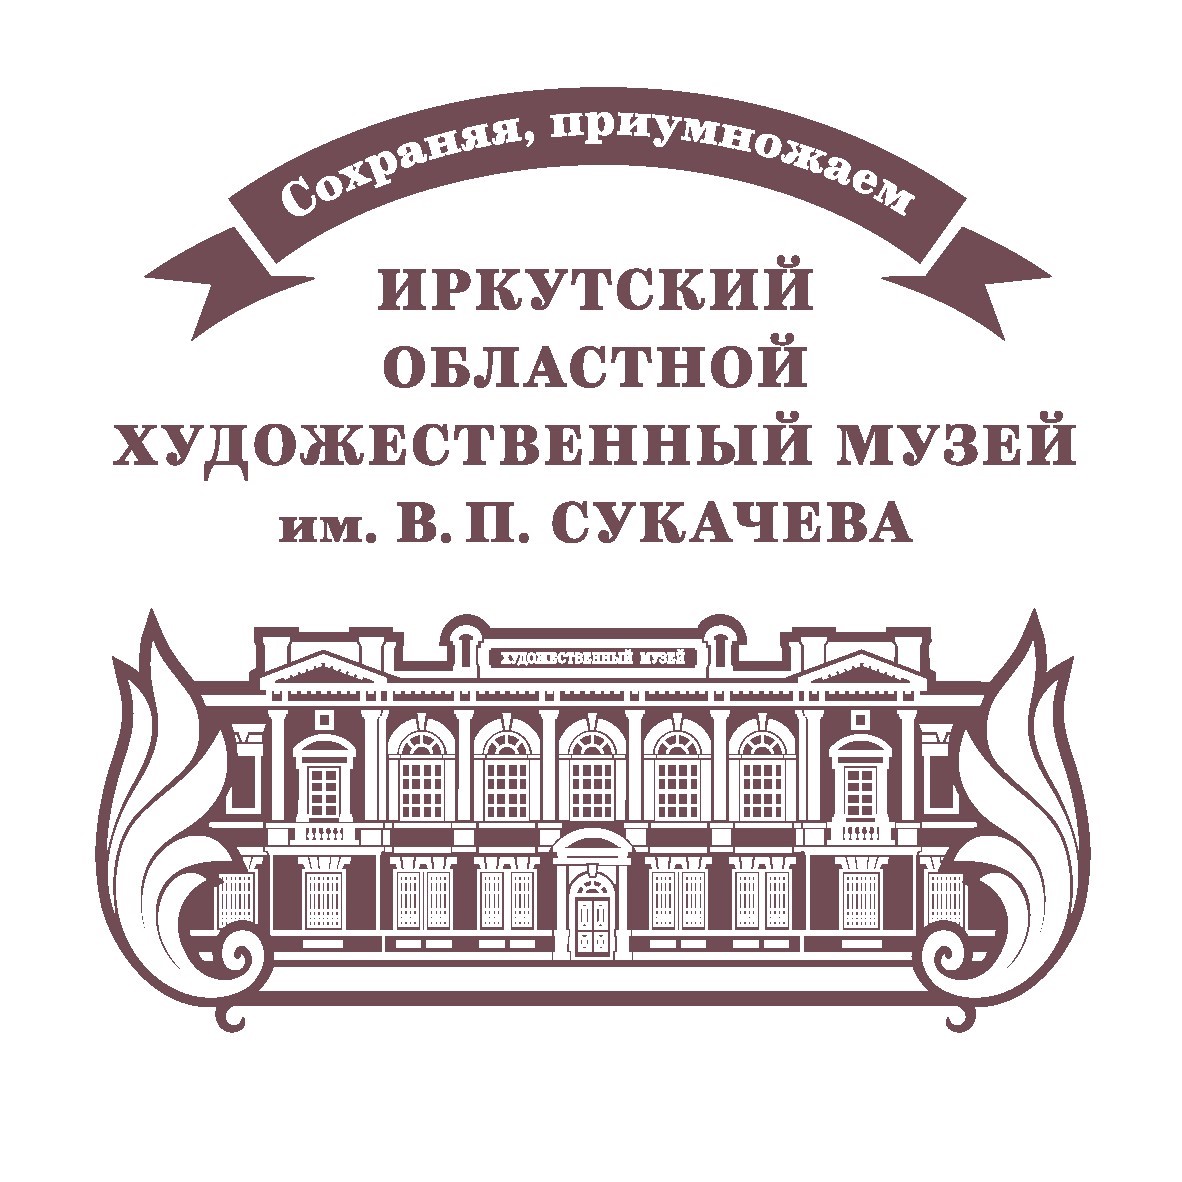 ГБУК Иркутский областной художественный музей имени В.П. Сукачева